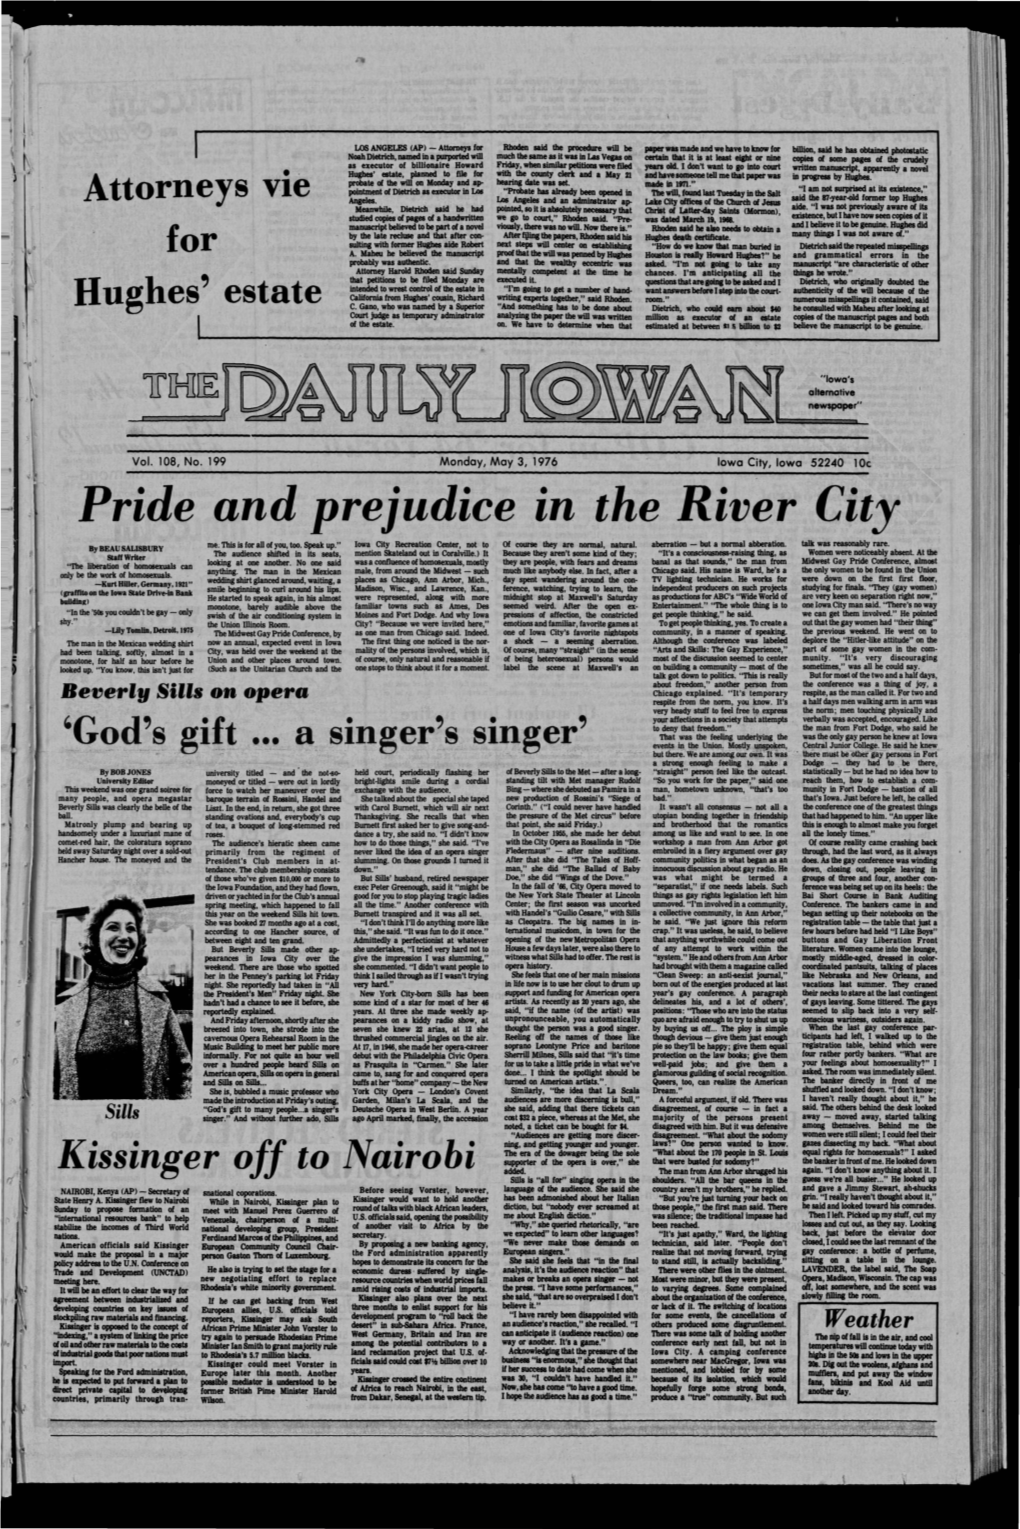 (Iowa City, Iowa), 1976-05-03